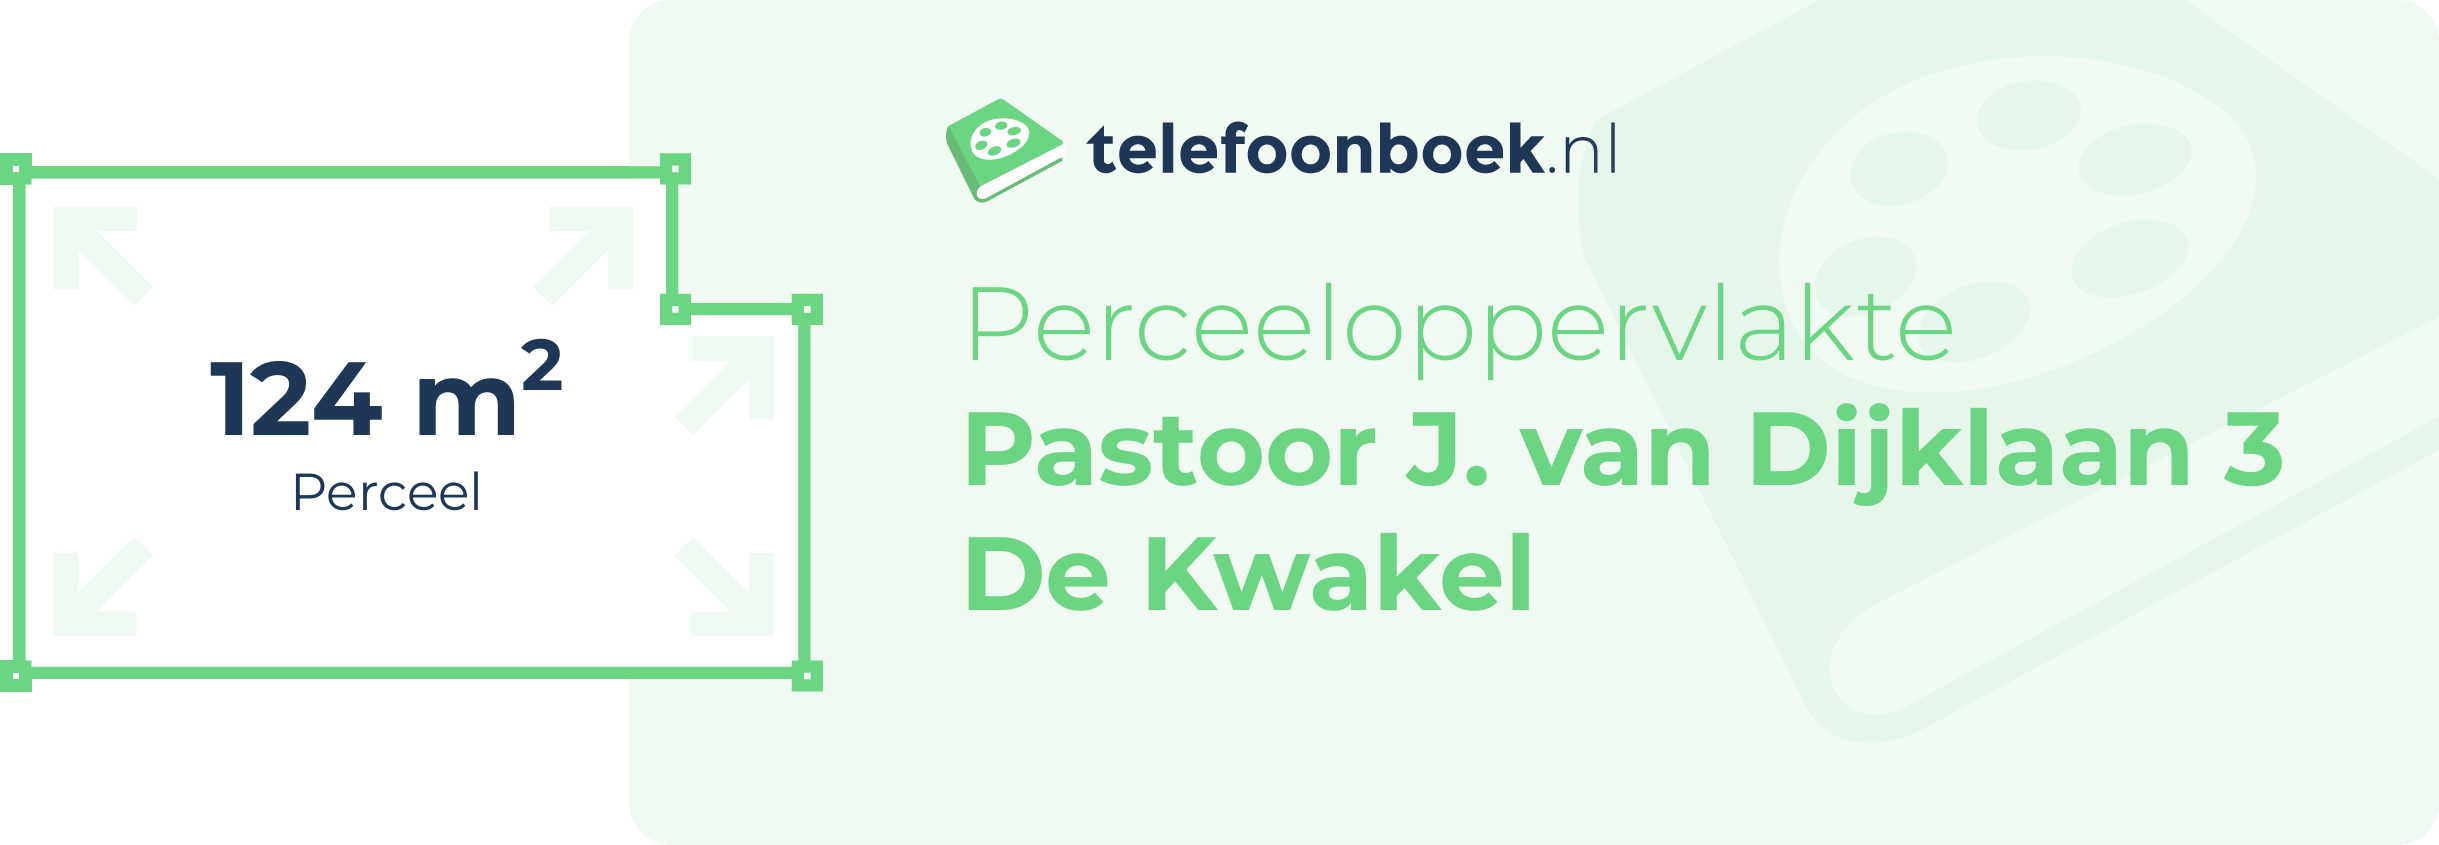 Perceeloppervlakte Pastoor J. Van Dijklaan 3 De Kwakel